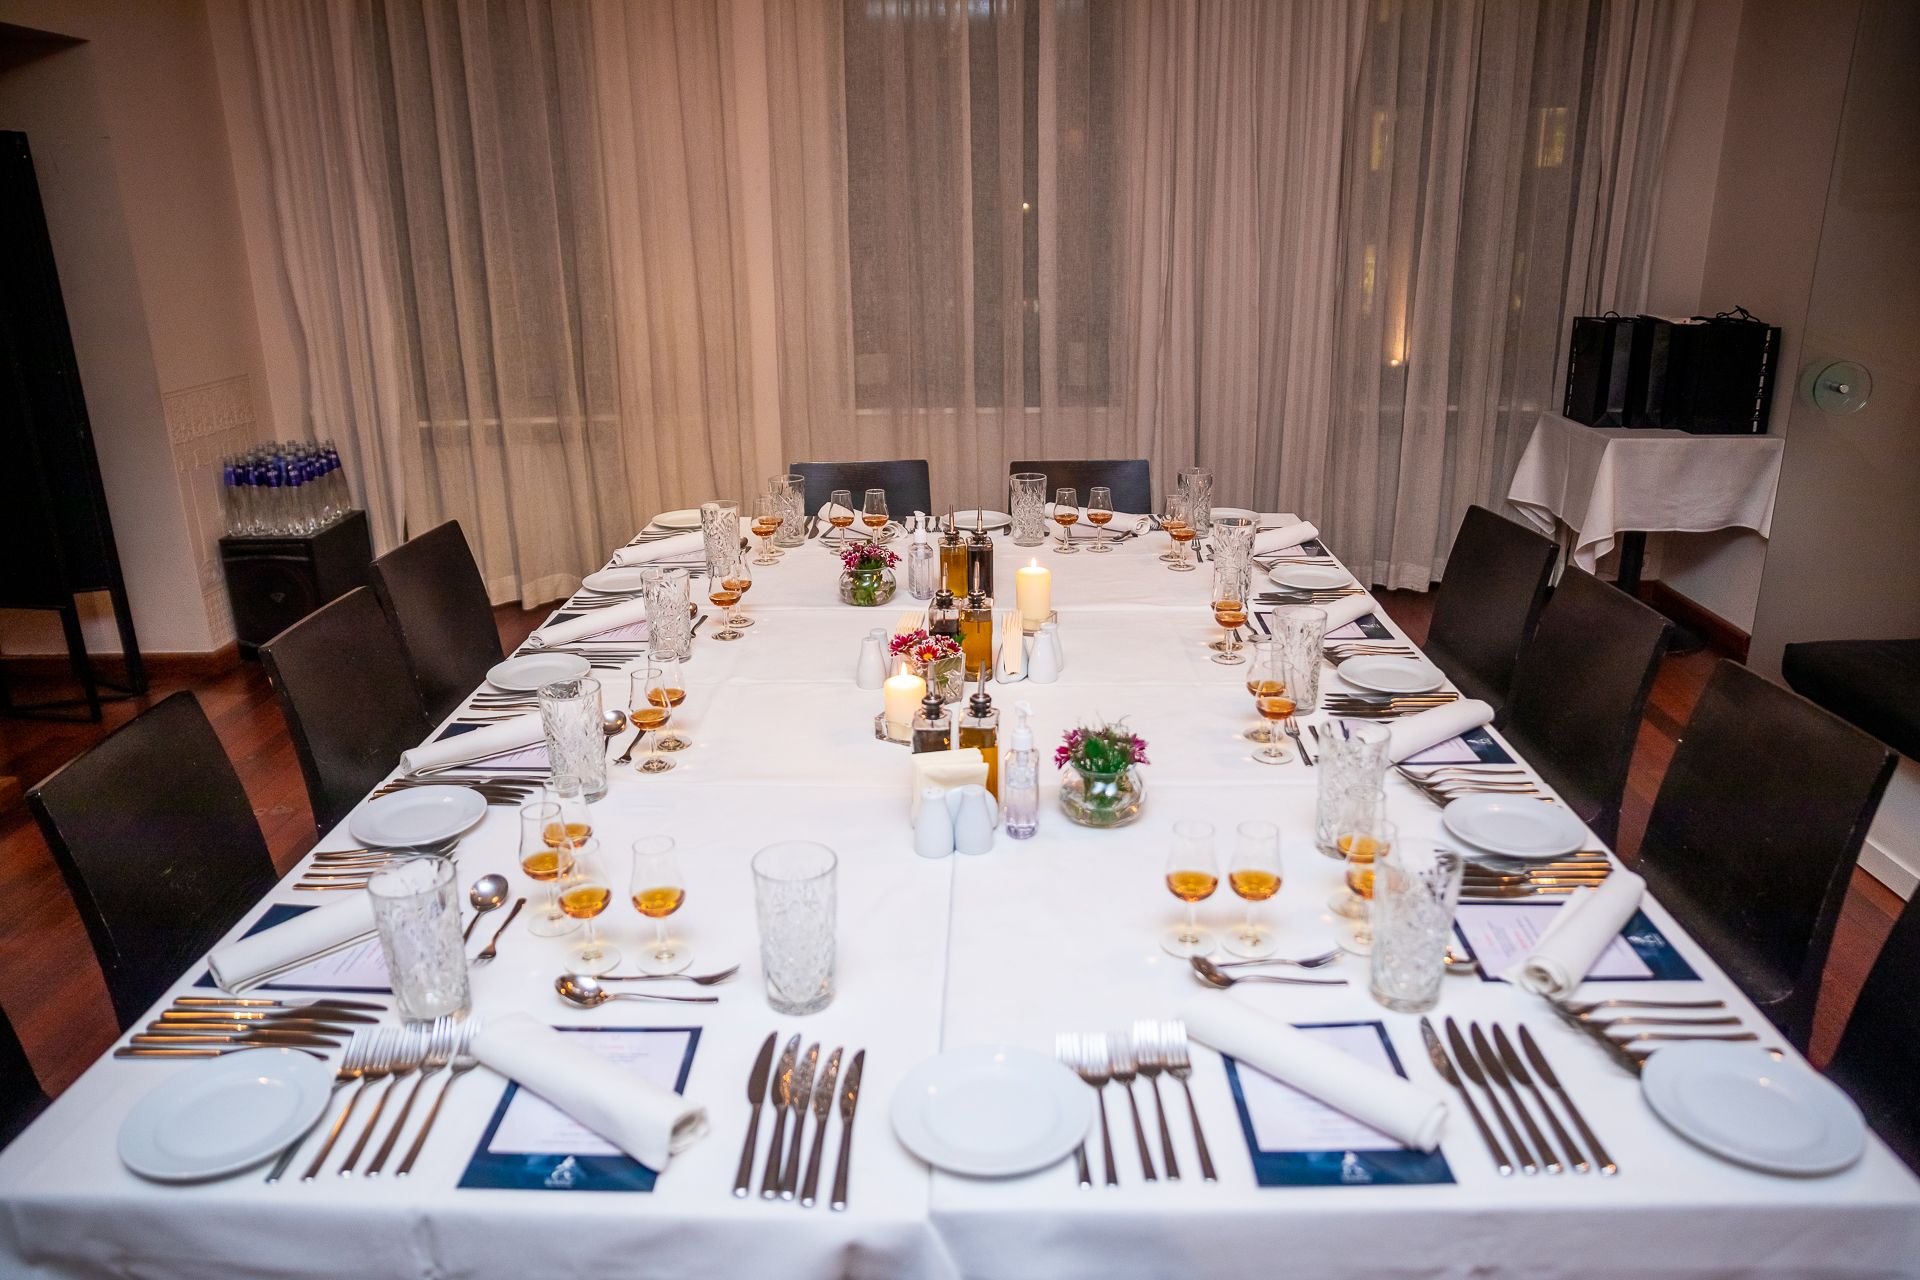 Ето така изглеждааше масата на специалната гала вечеря за успешни мъже! 